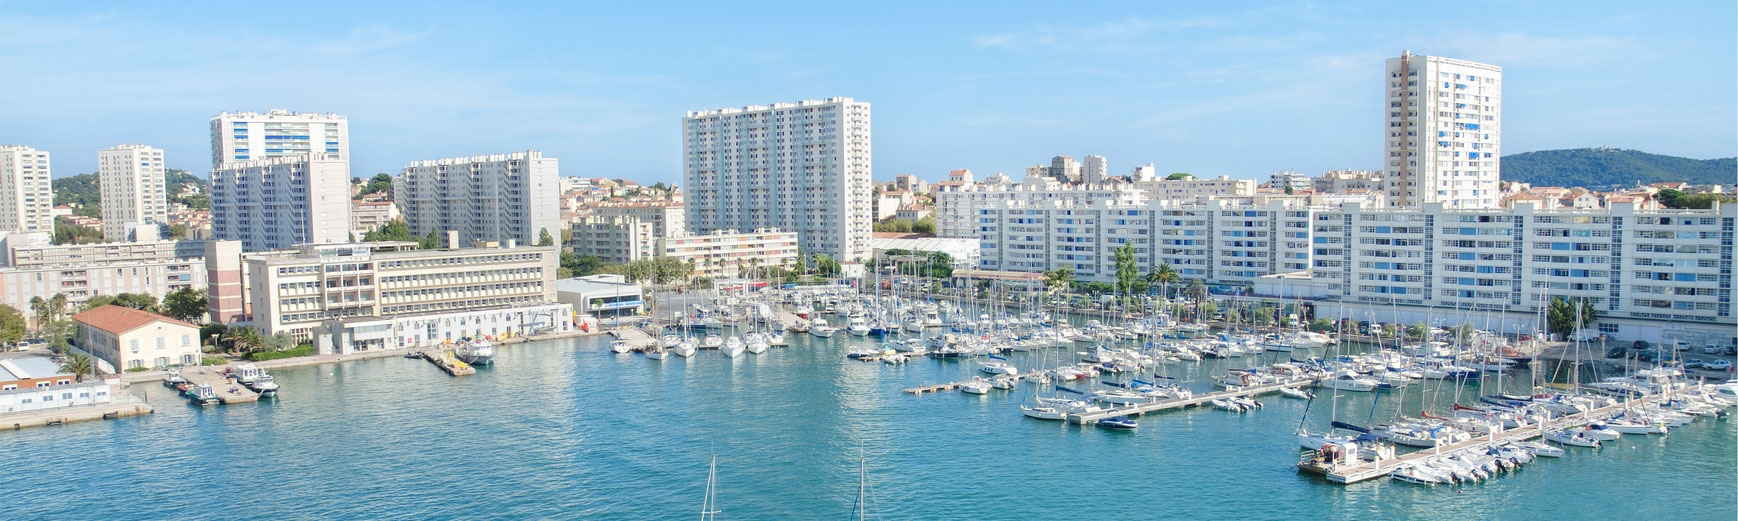 Toulon, Francia, vista panorámica del puerto